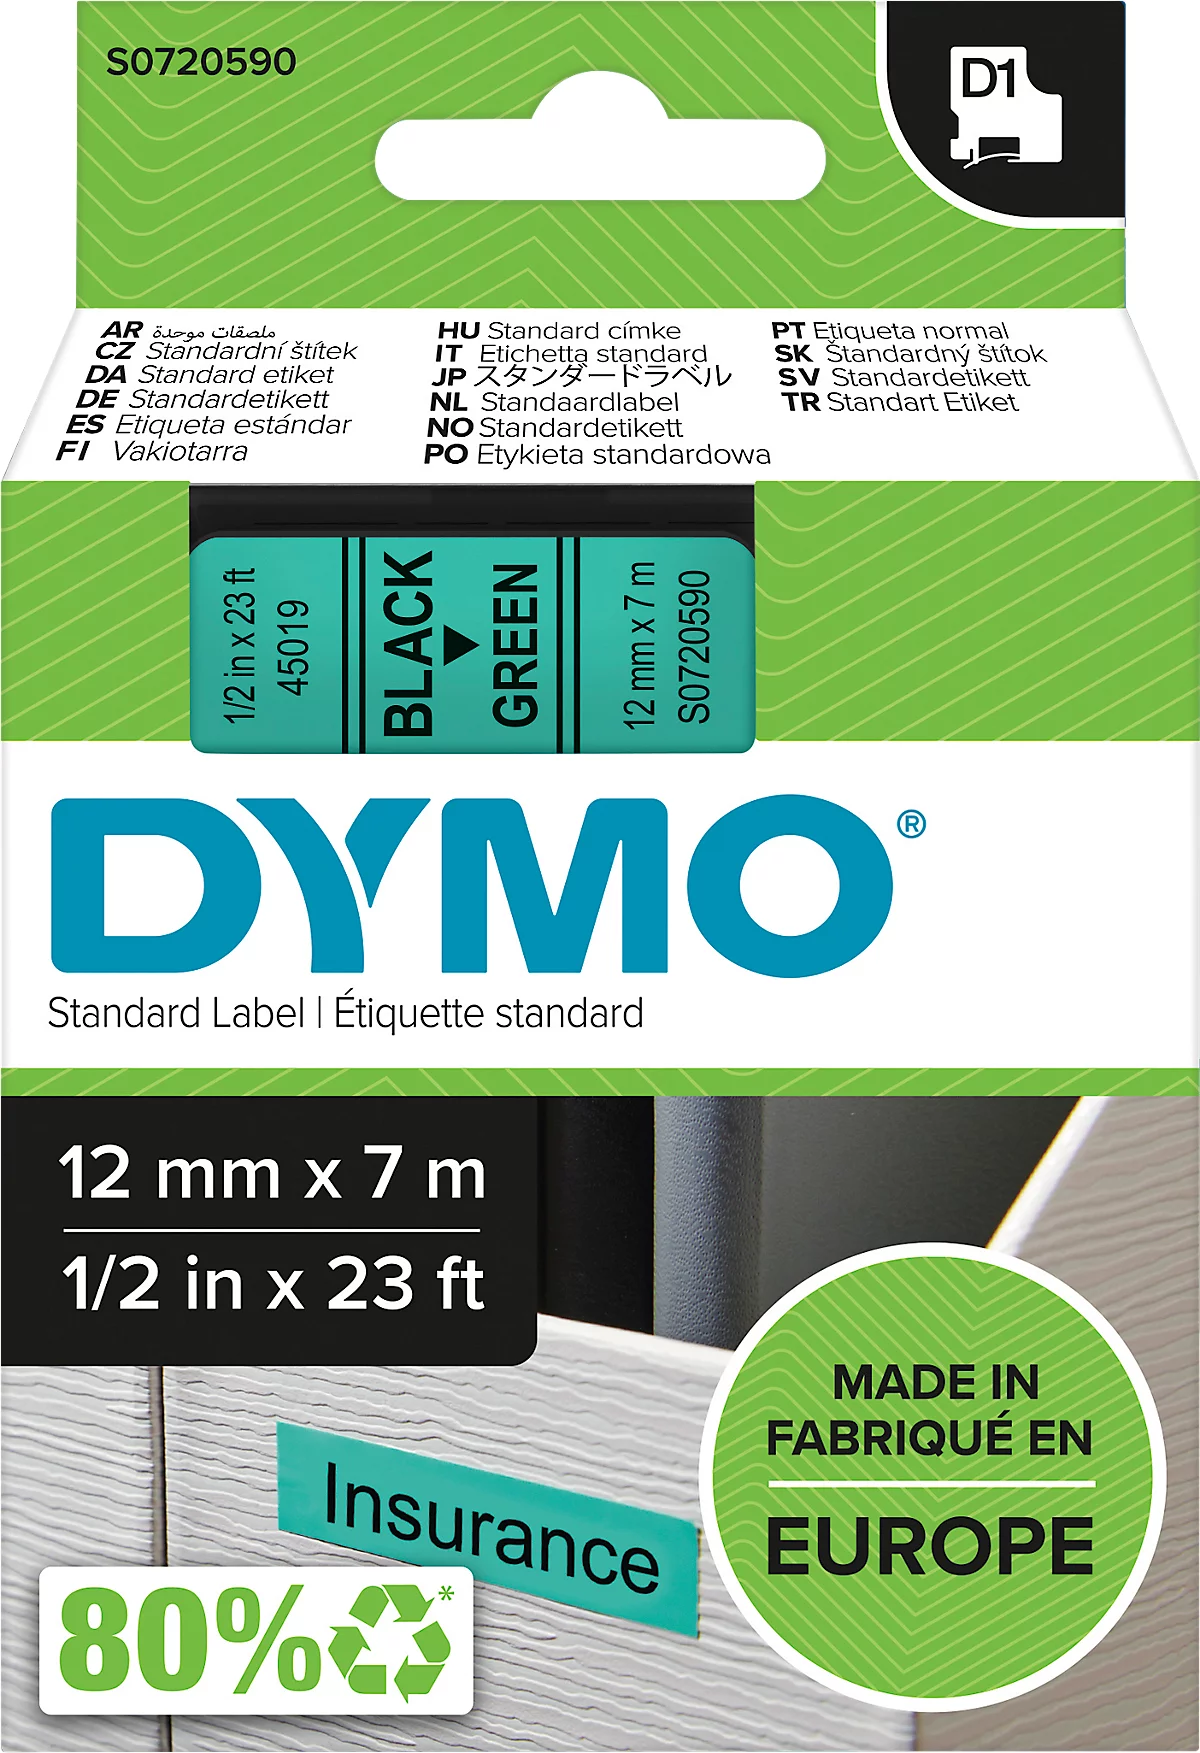 DYMO® Schriftbandkassette D1 45019, 12 mm breit, grün/schwarz